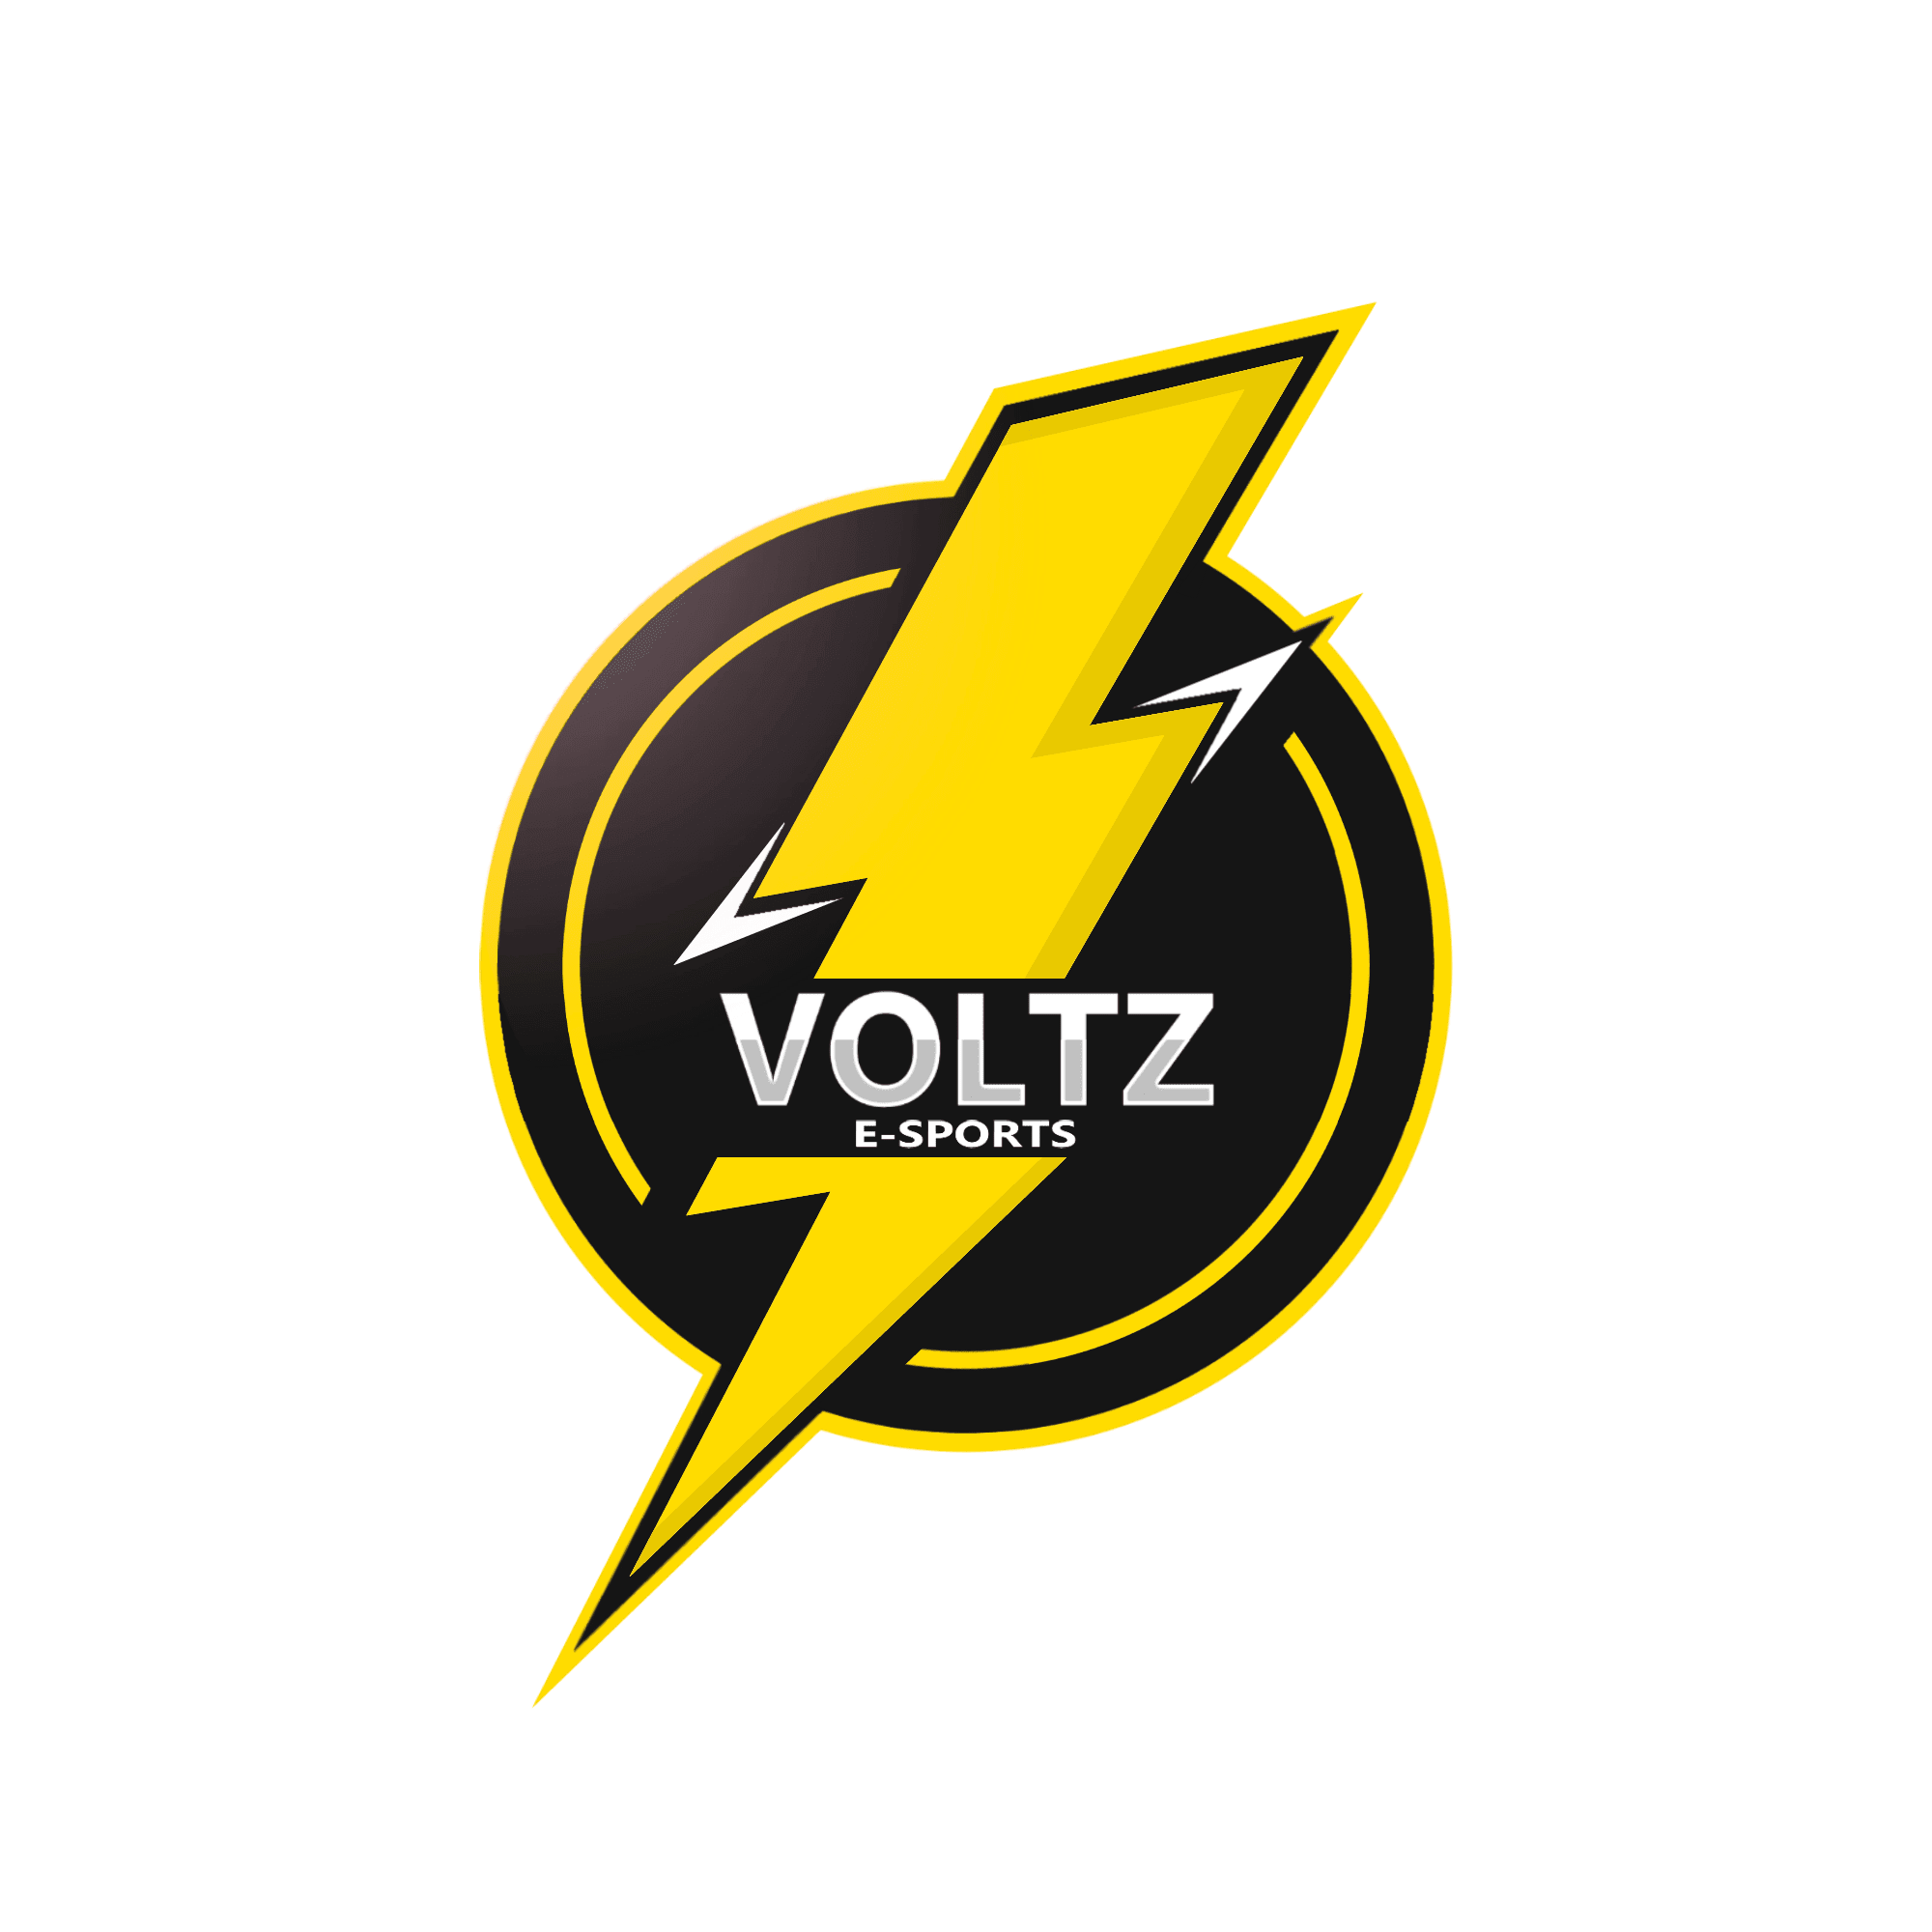 Voltz E-Sports